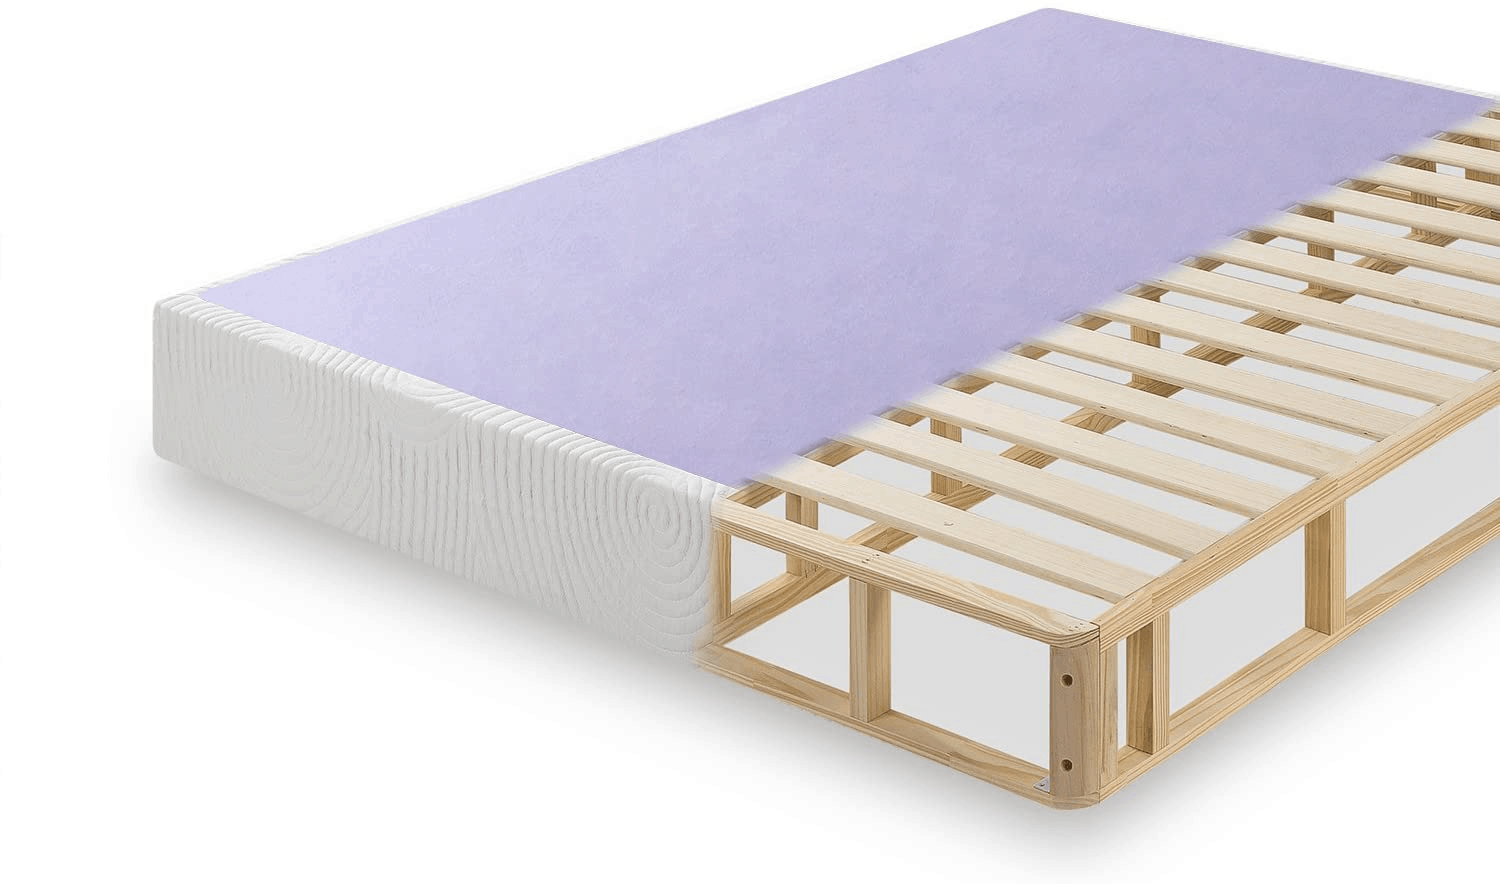 best foundation mattress review